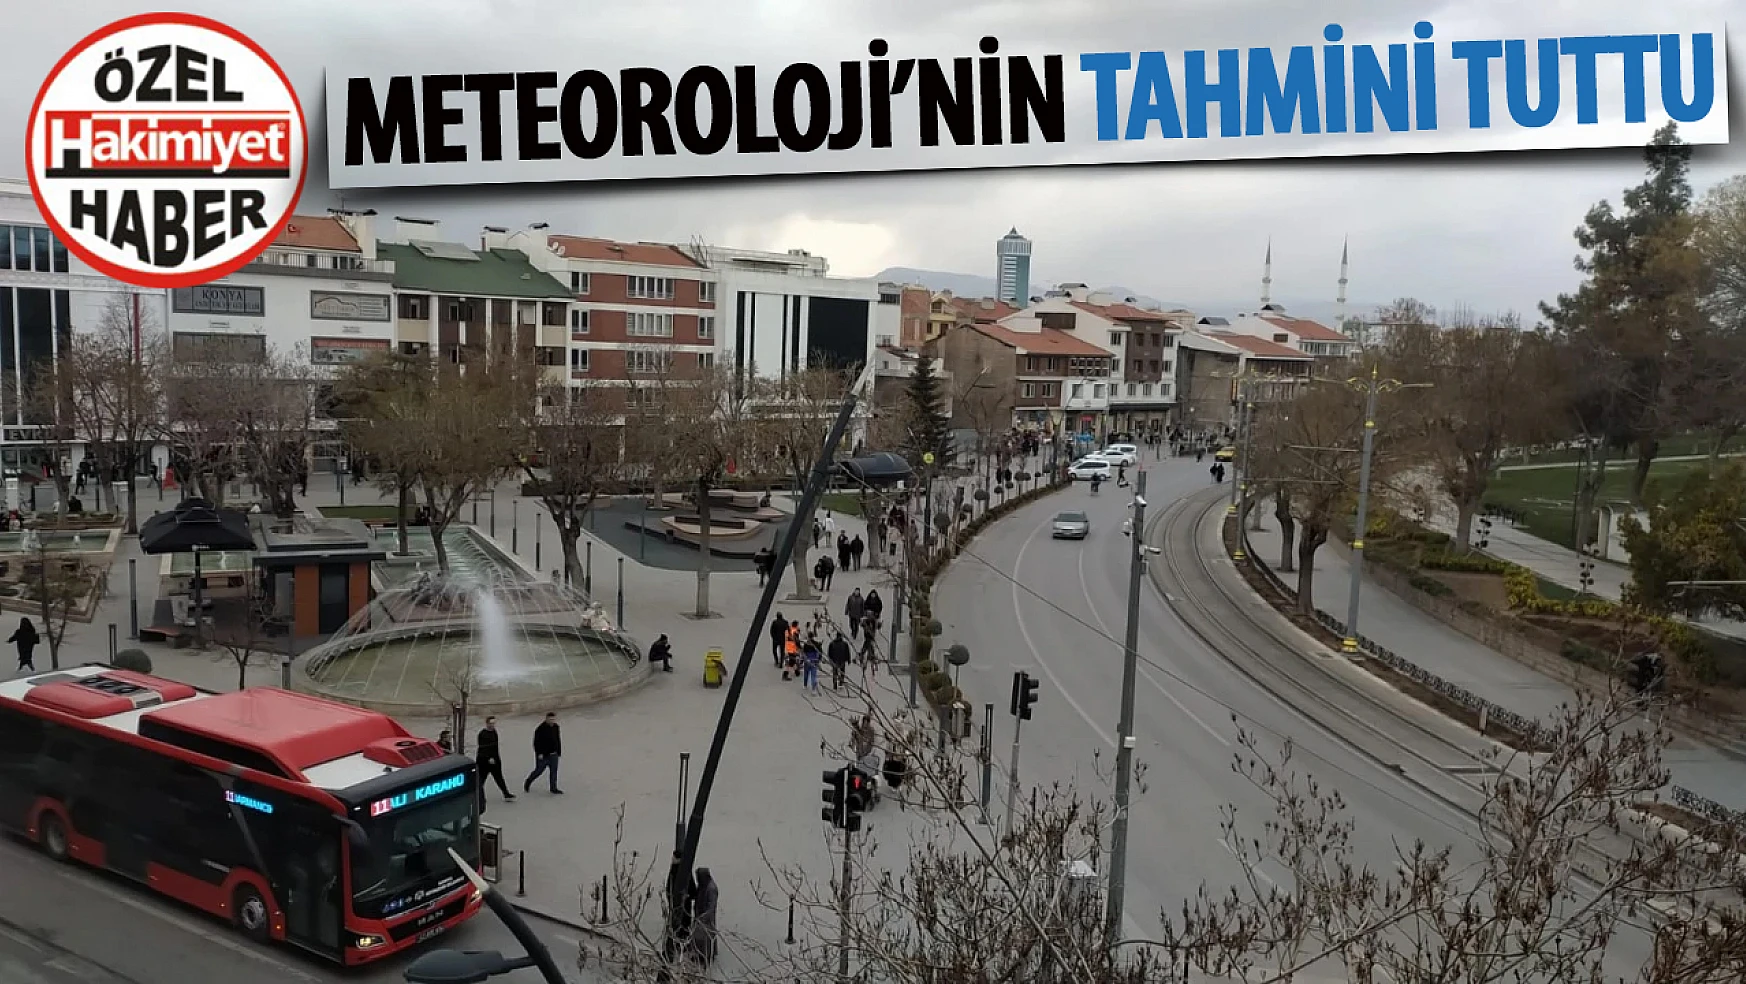 Konya'da Meteoroloji'nin tahmini tutu: Az da olsa yağdı!